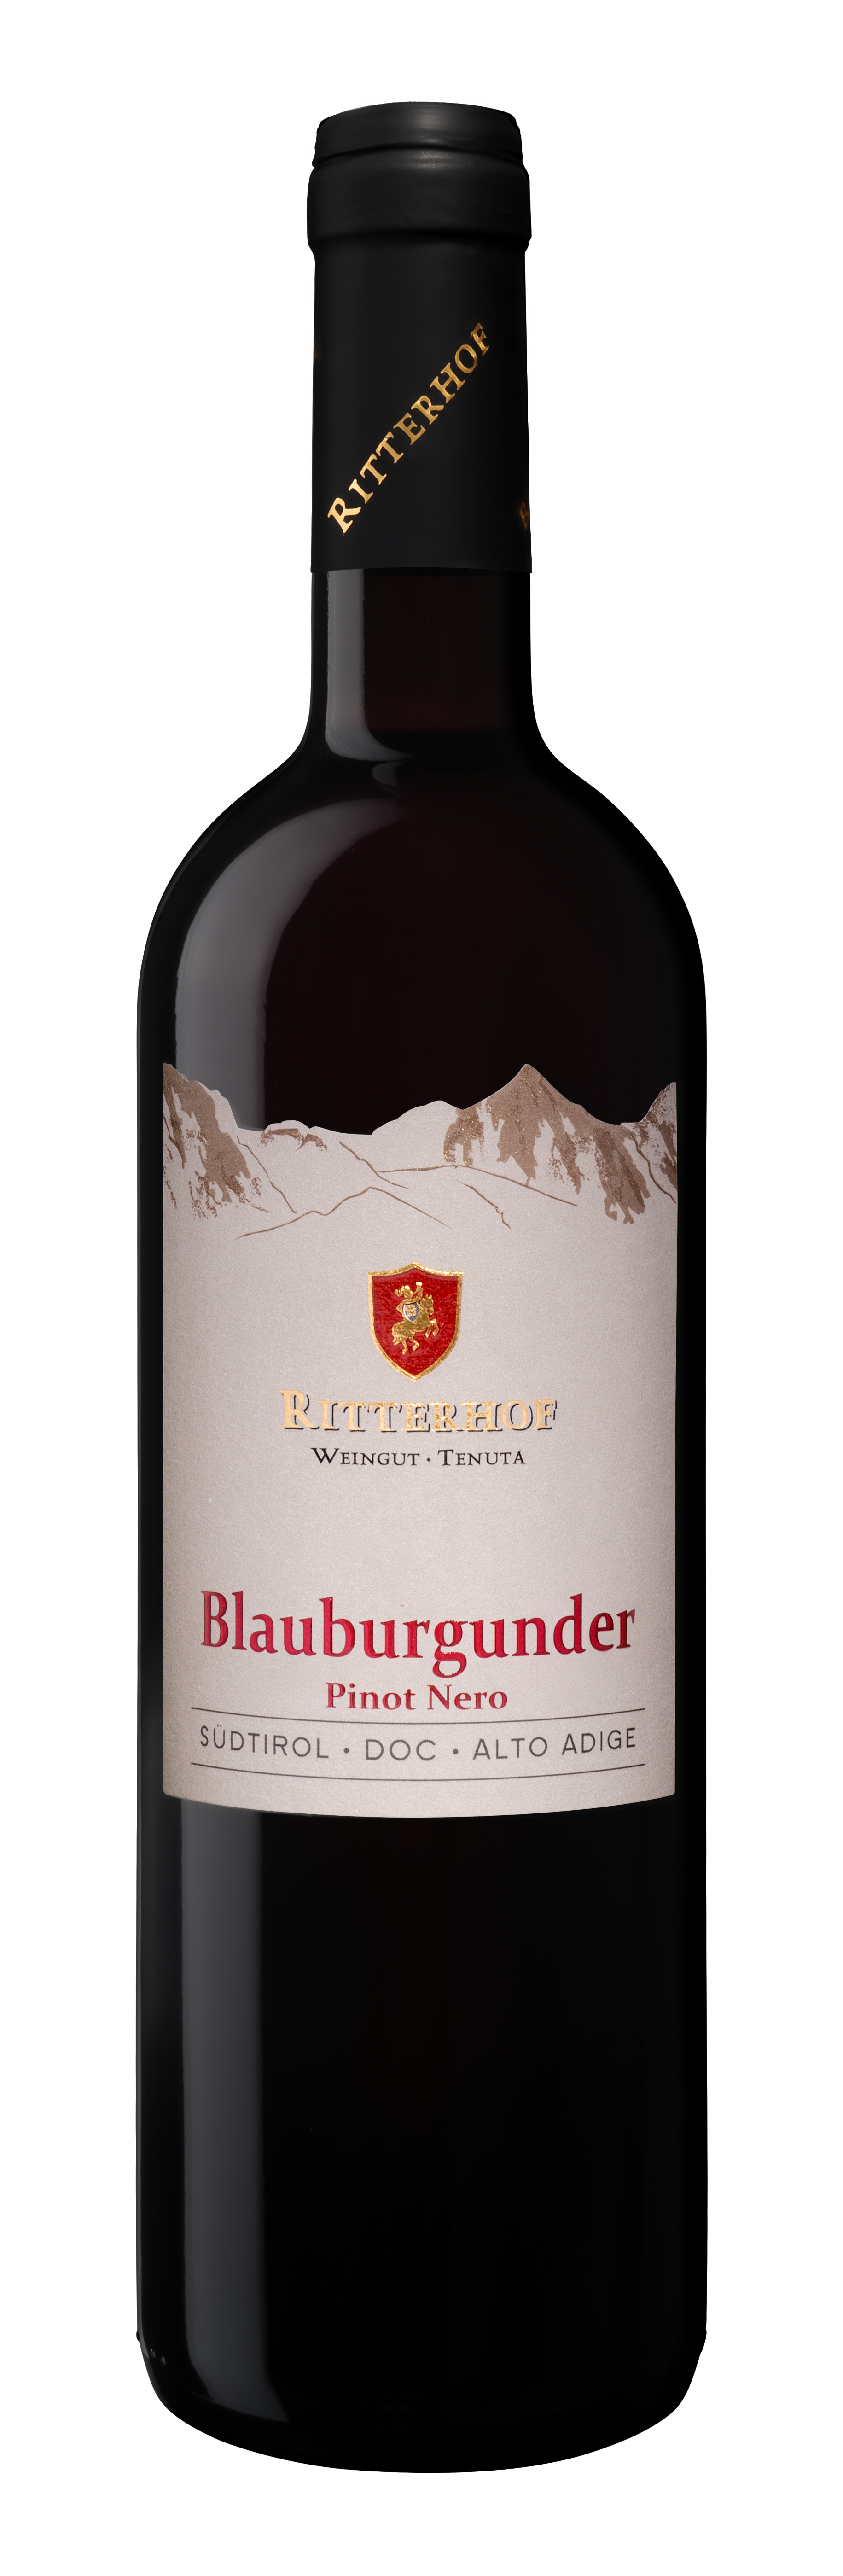 Blauburgunder - Pinot Nero